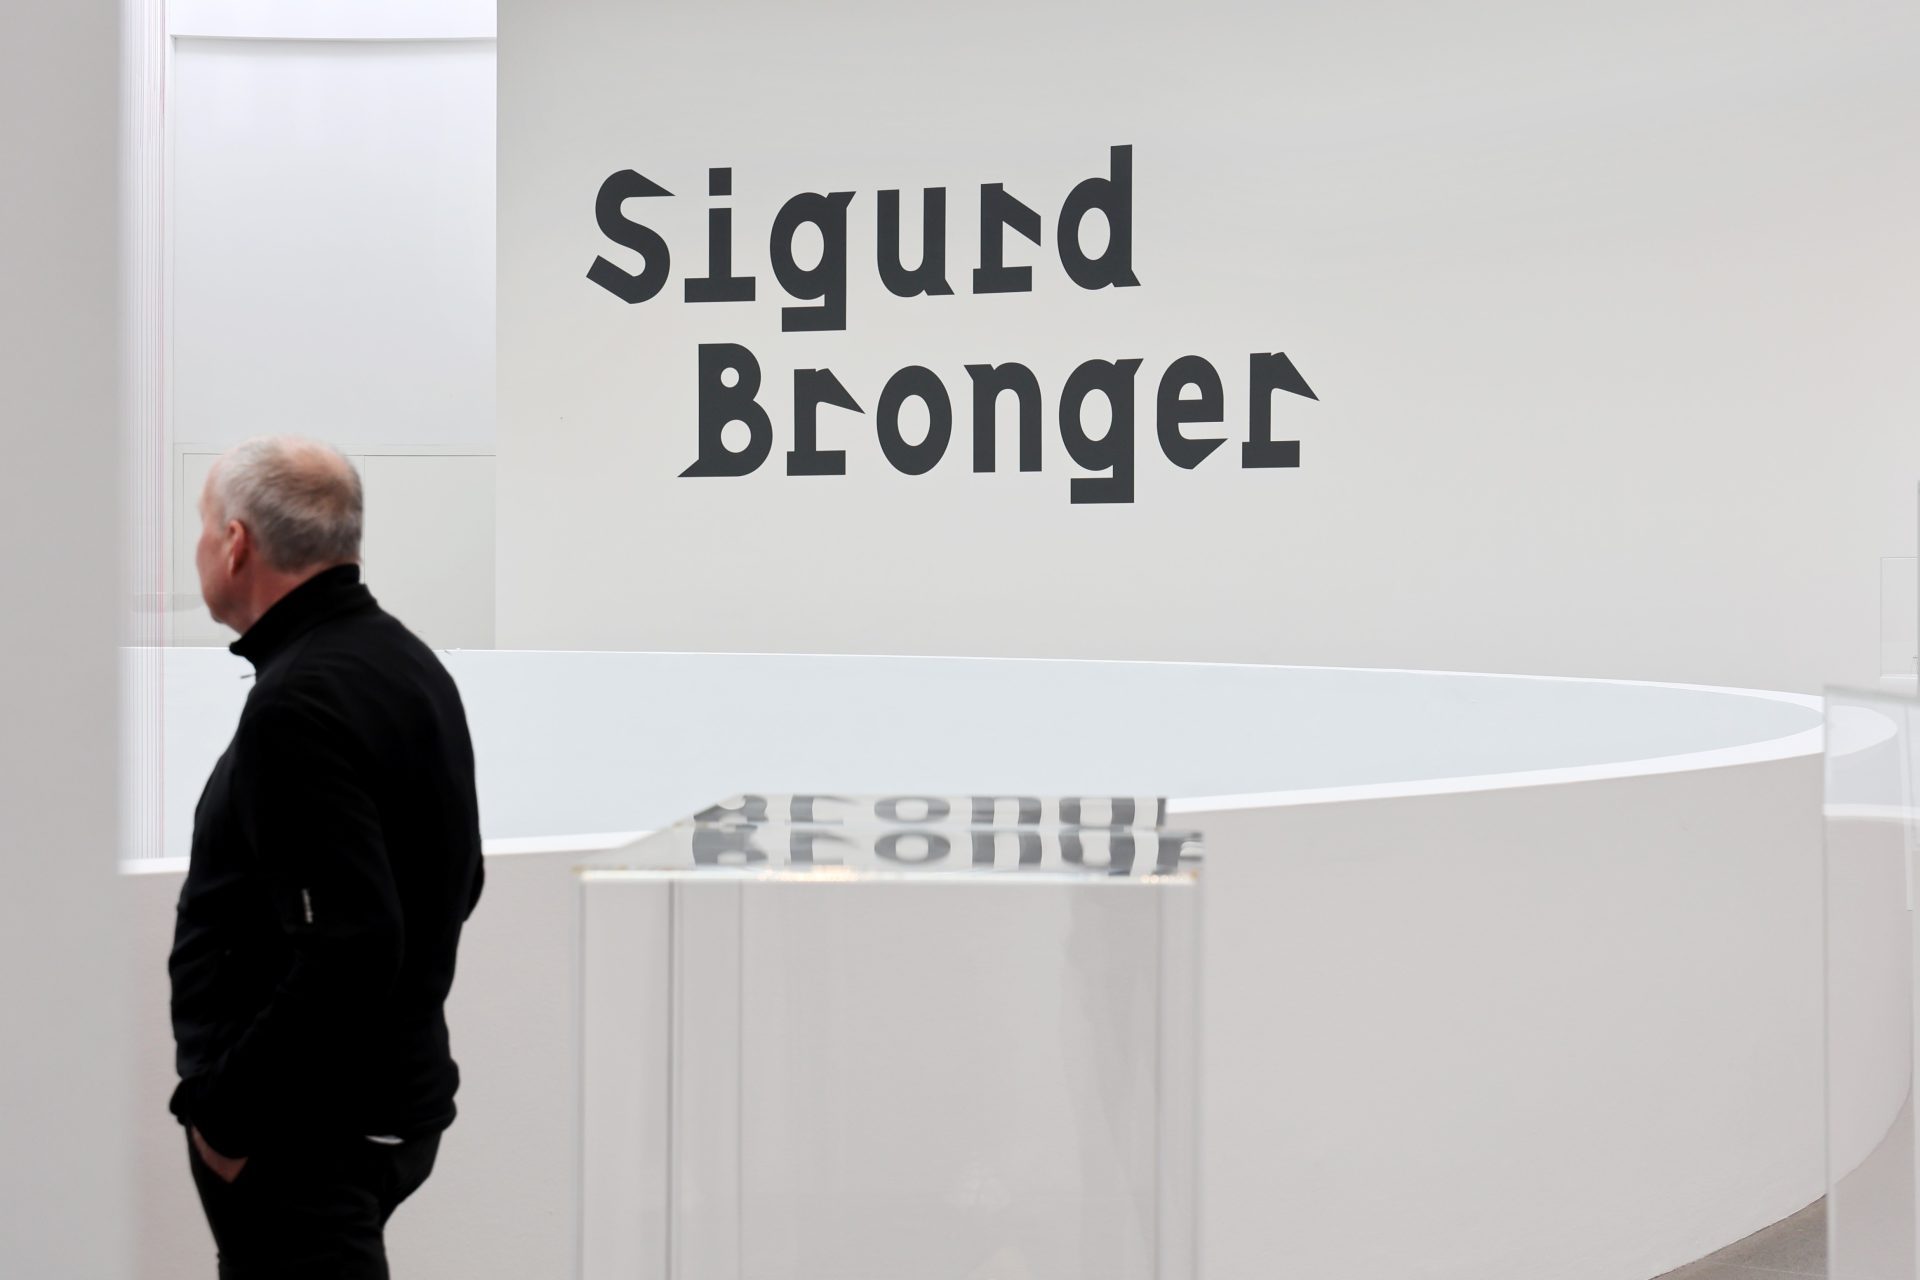 Ein Mann steht in der Ausstellung Sigurd Bronger. Er hat einen schwarzen Rollkragen und eine schwarze Hose an. Er ist seitlich abgebildet und bewegt sich durch den Raum. Sein Gesicht ist nicht zu erkennen. Er hat braue Haare und eine Glatze. Im Hintergrund erkennt man den Ausstellungstitel auf der Wand.